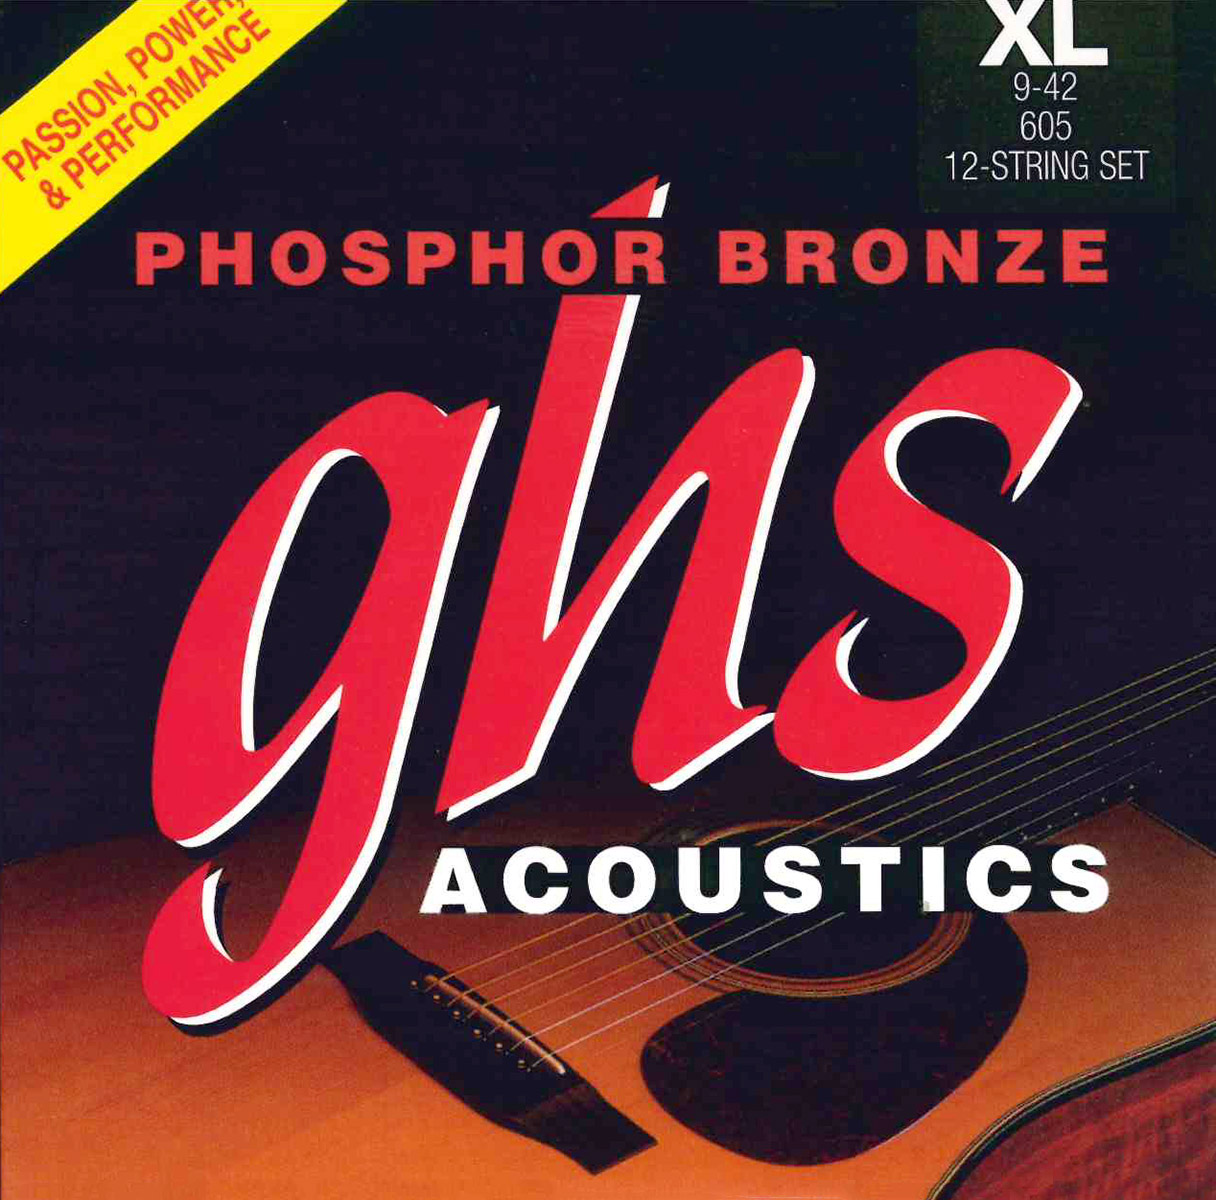 GHS Phosphor Bronze - 605 - Acoustic Guitar String Set, 12 String Extra Light, .009-.042